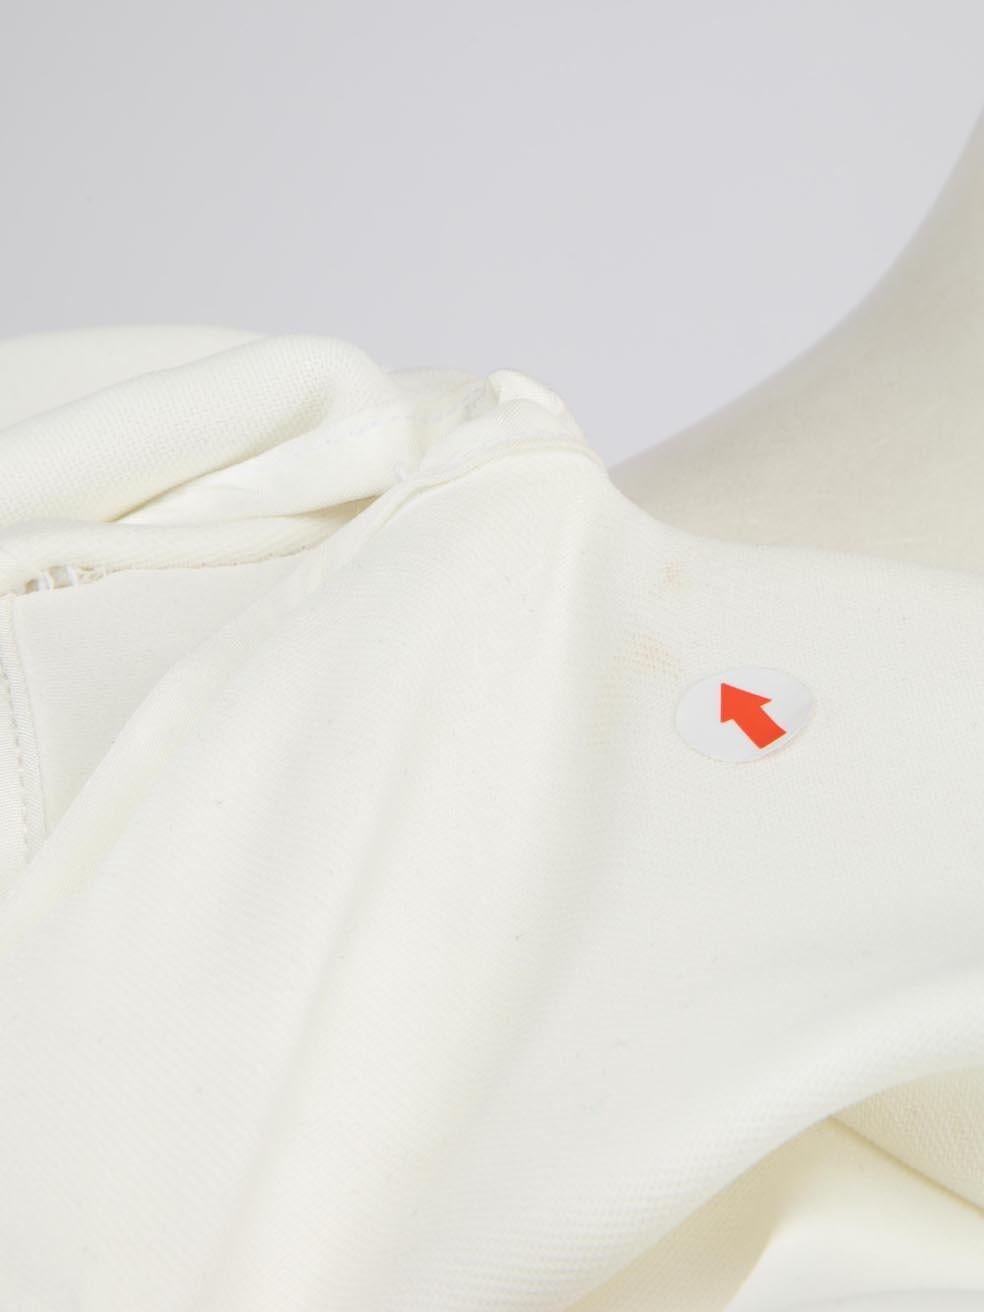 Maticevski AW23 White Rigorous Maxi Gown Size L For Sale 1